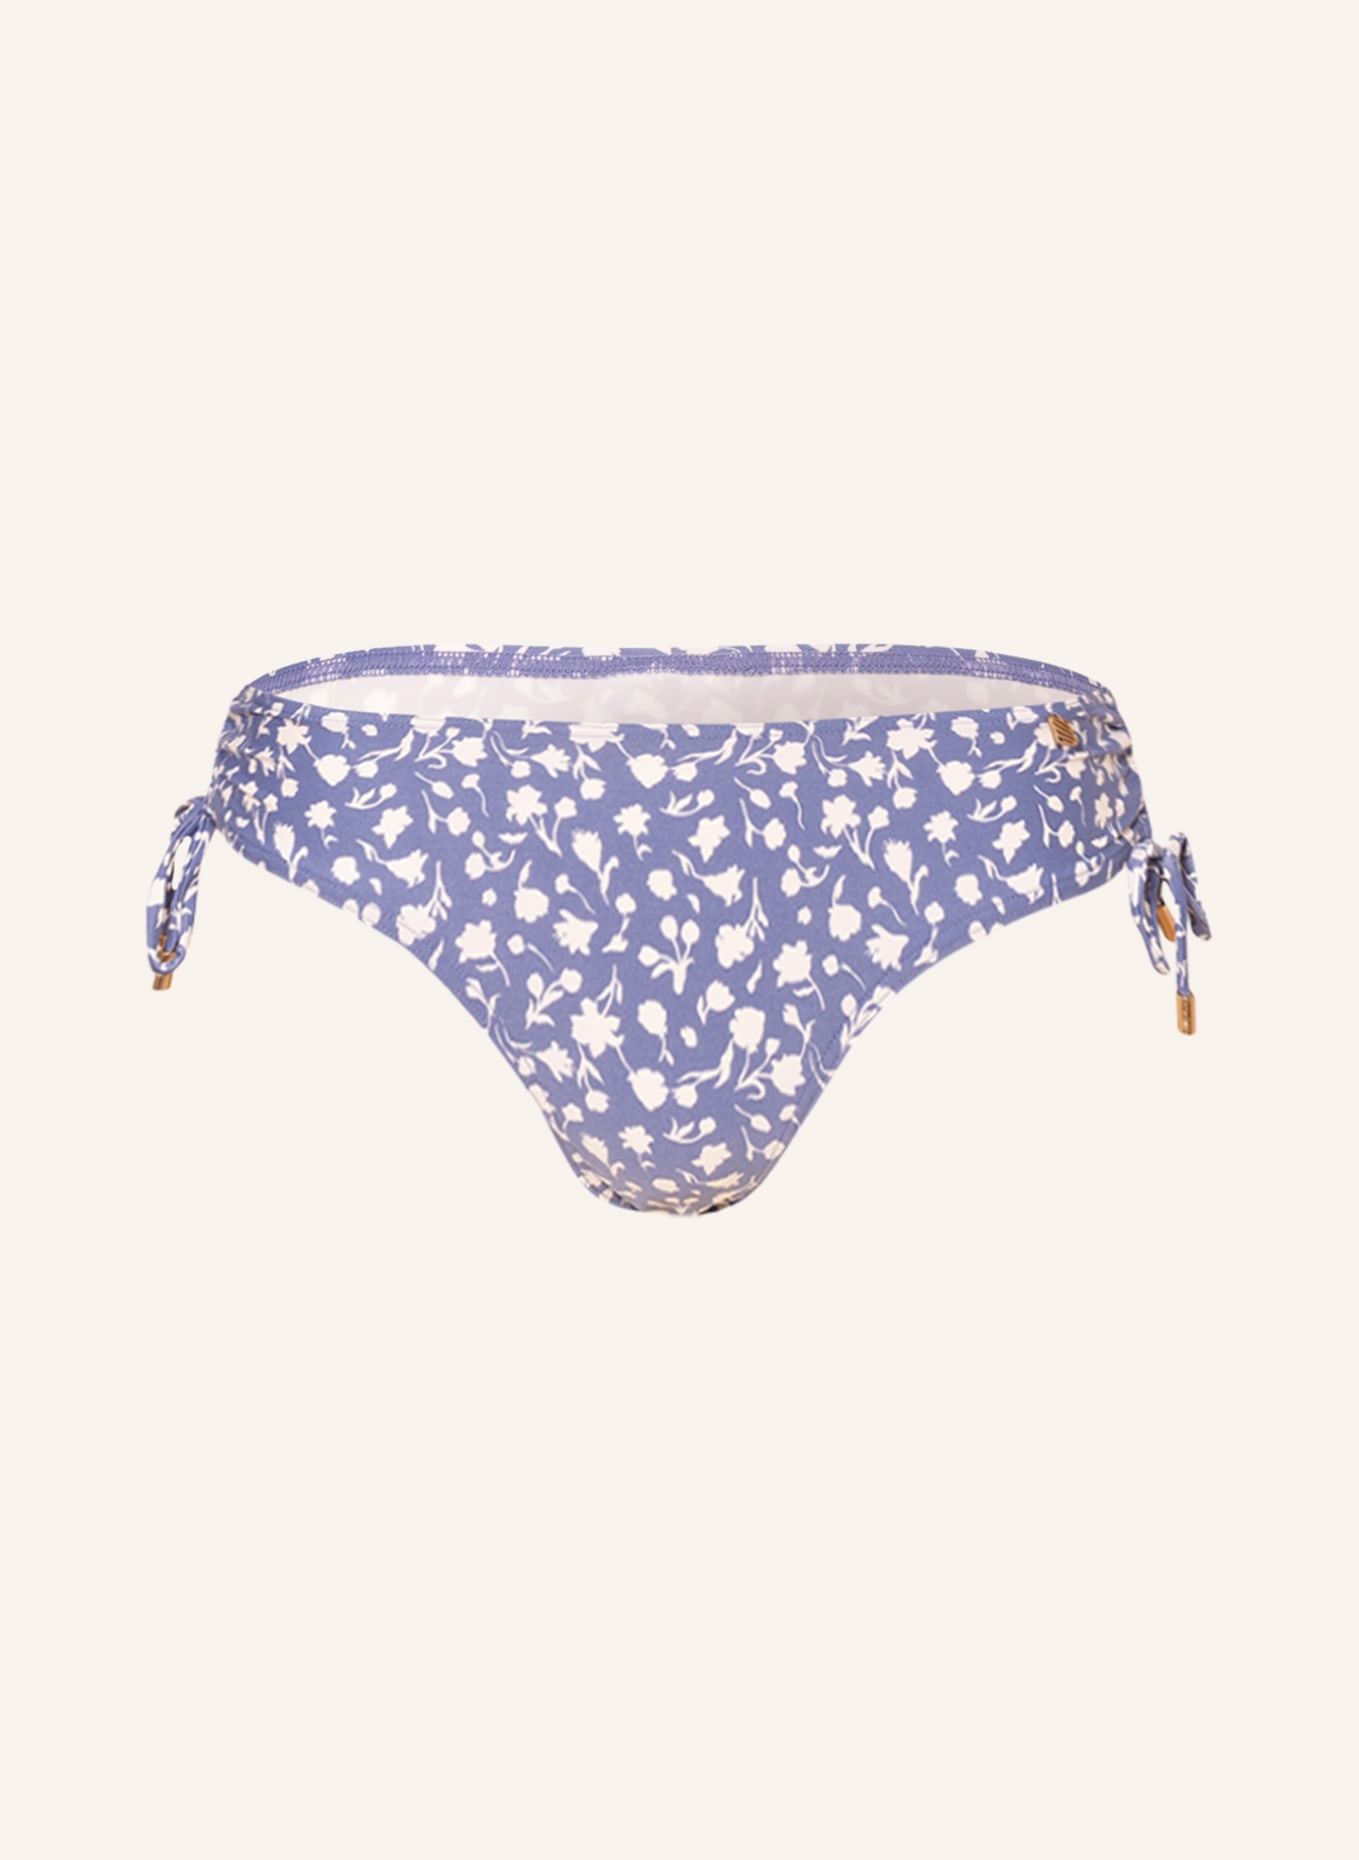 BEACHLIFE Basic bikini bottoms FLOWER FEST, Color: LIGHT BLUE/ WHITE (Image 1)